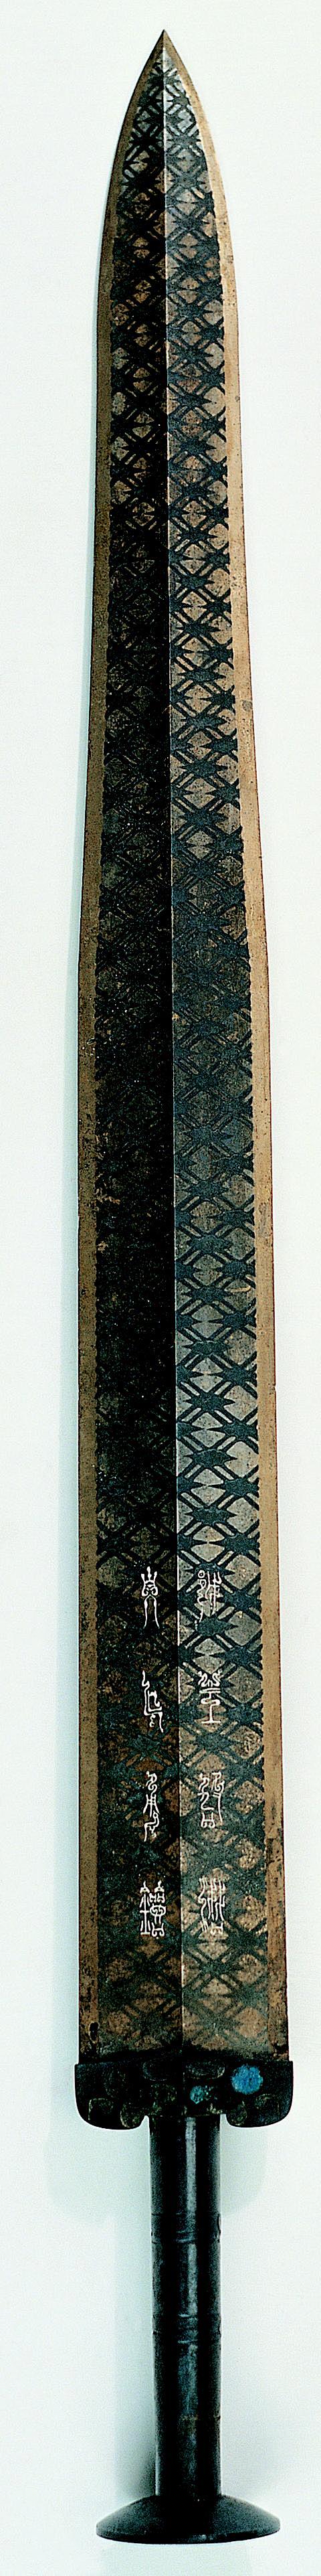 越王勾践剑的花纹工艺图片